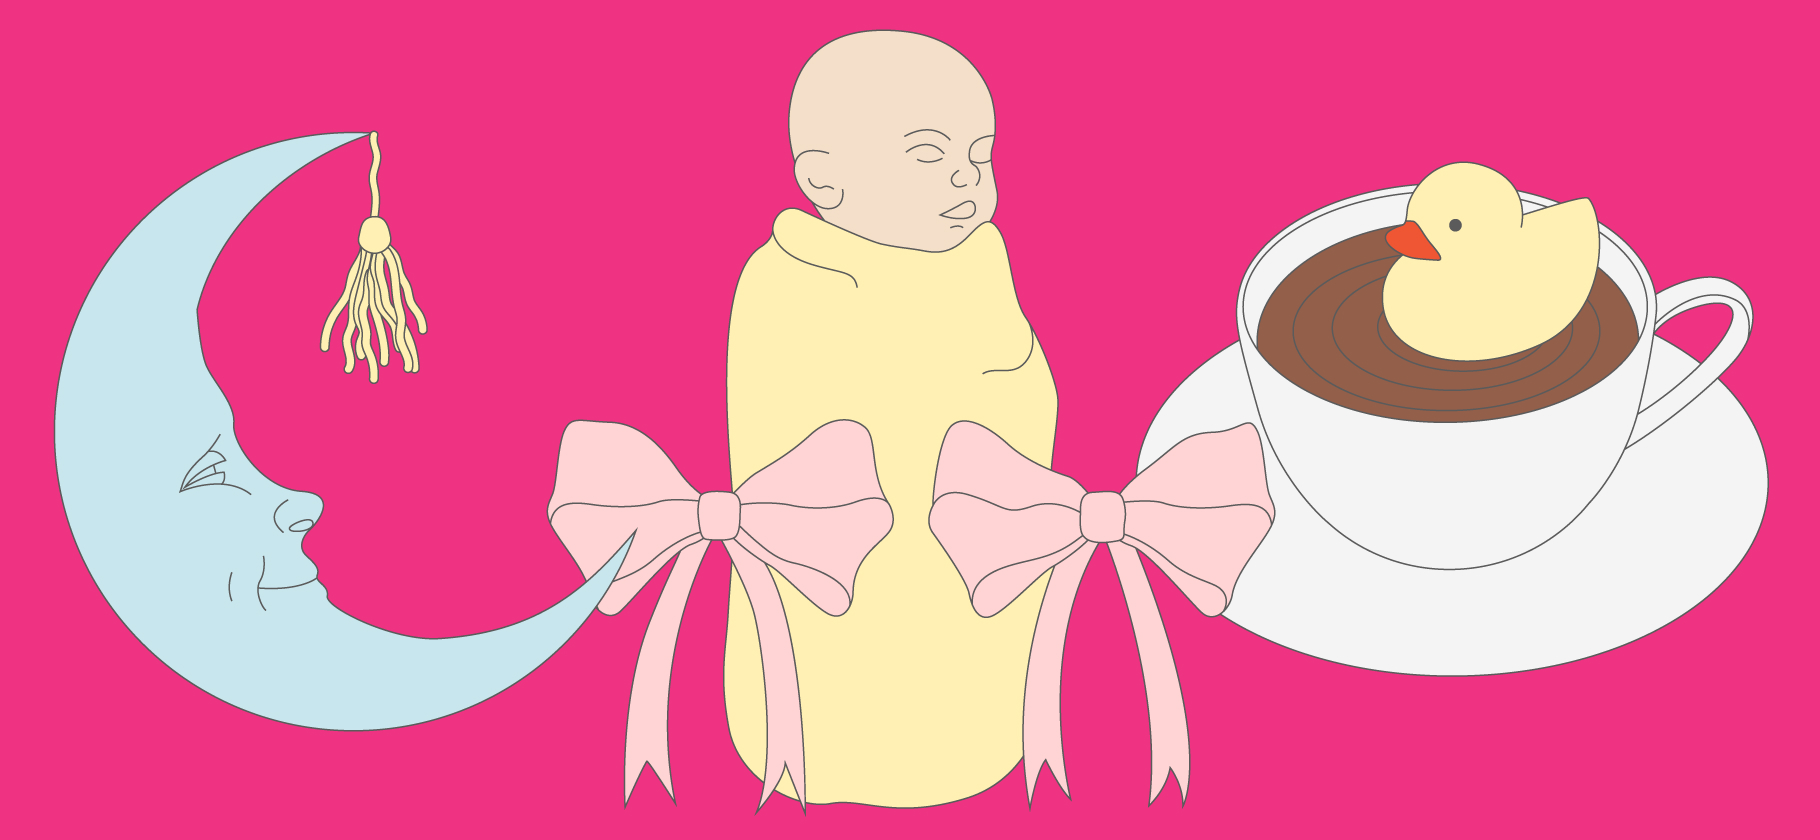 7 убеждений о труд­нос­тях мате­ринства, с кото­рыми мне хоче­тся поспорить